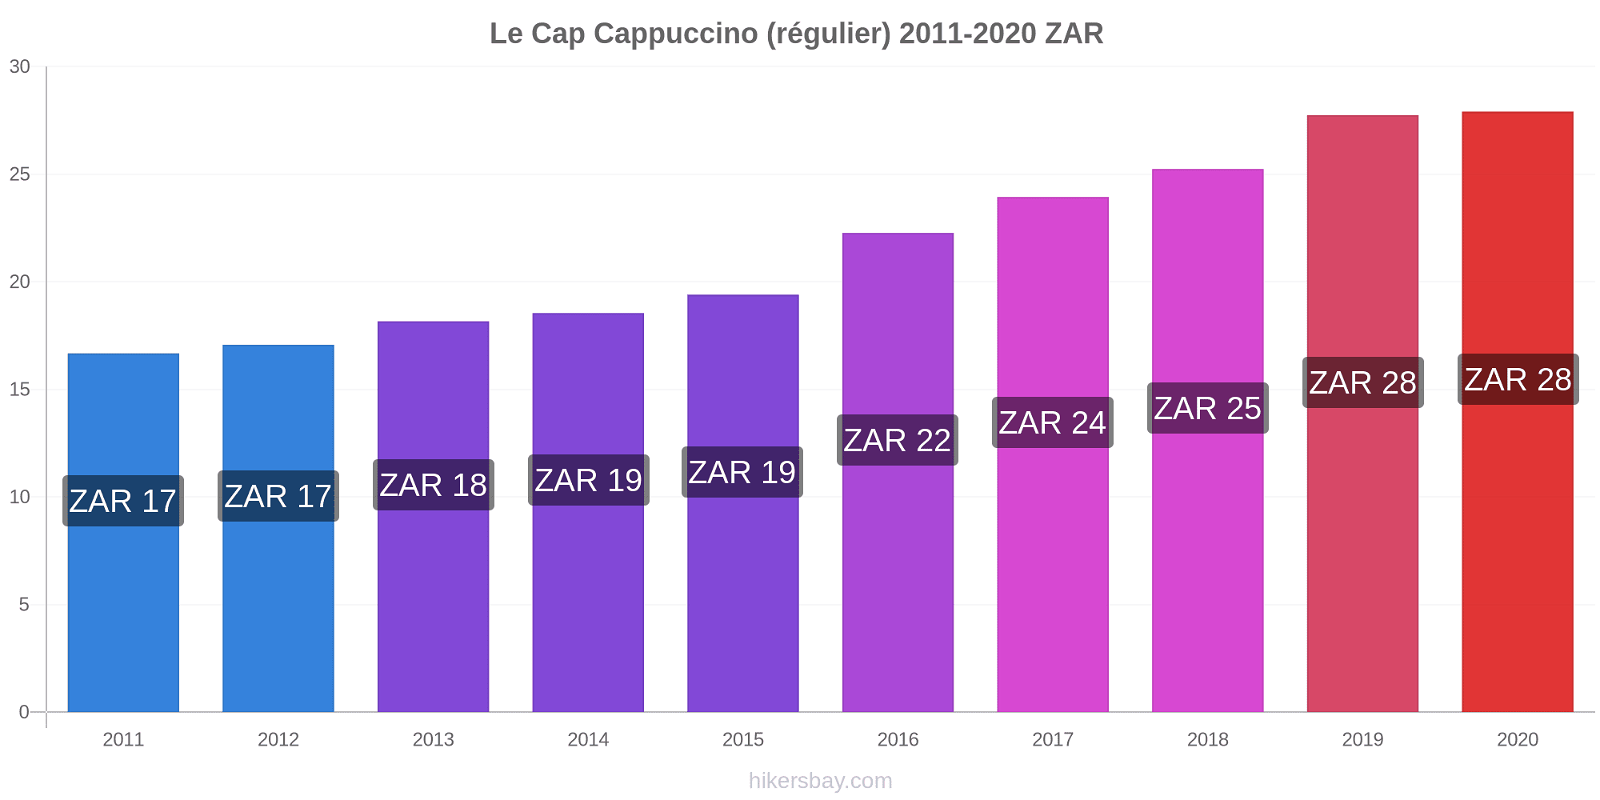 Le Cap changements de prix Cappuccino (régulier) hikersbay.com